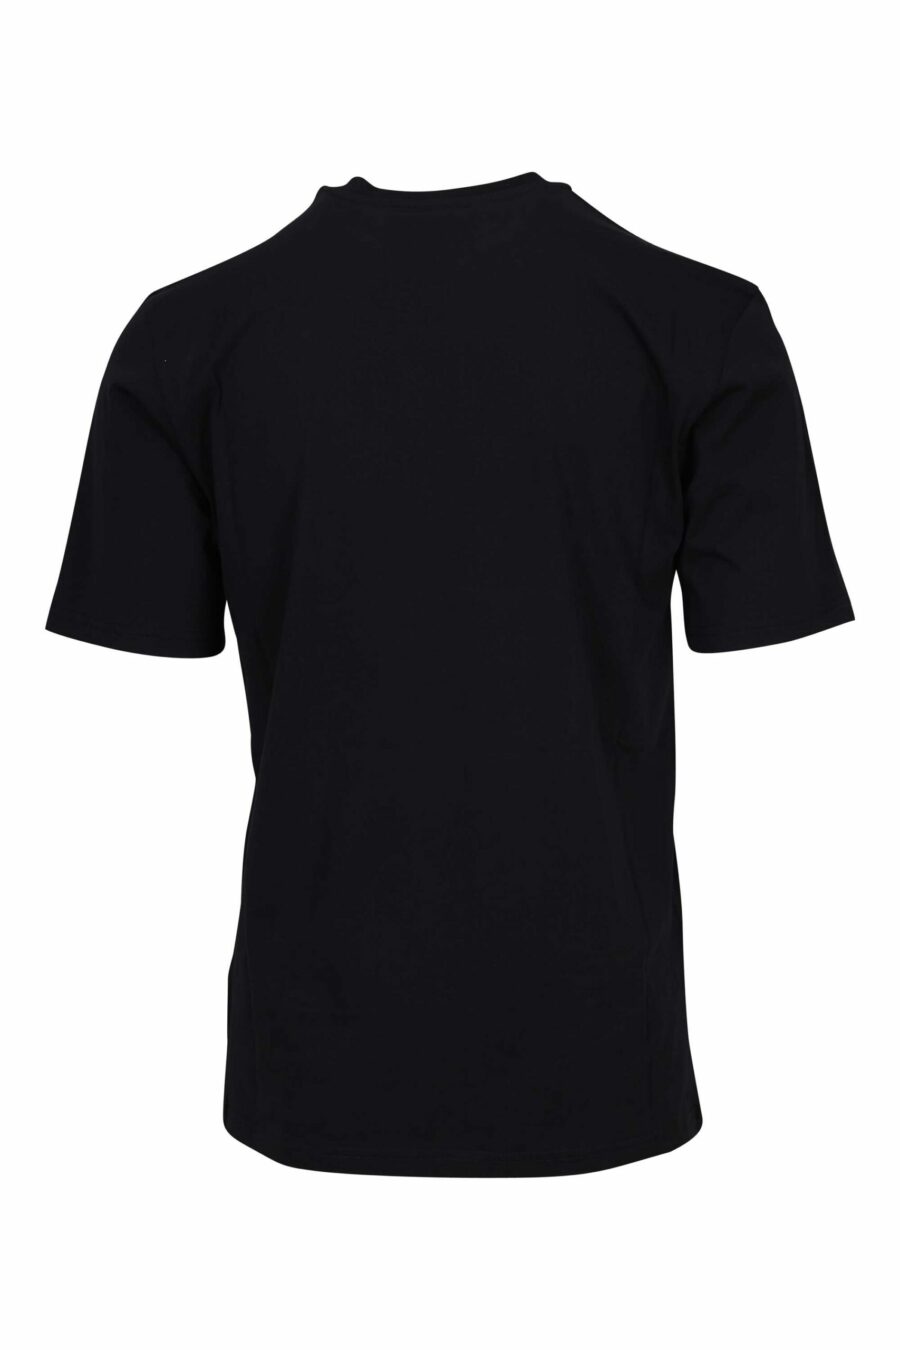 Schwarzes Bio-Baumwoll-T-Shirt "100% pure moschino" - 667113765150 1 skaliert